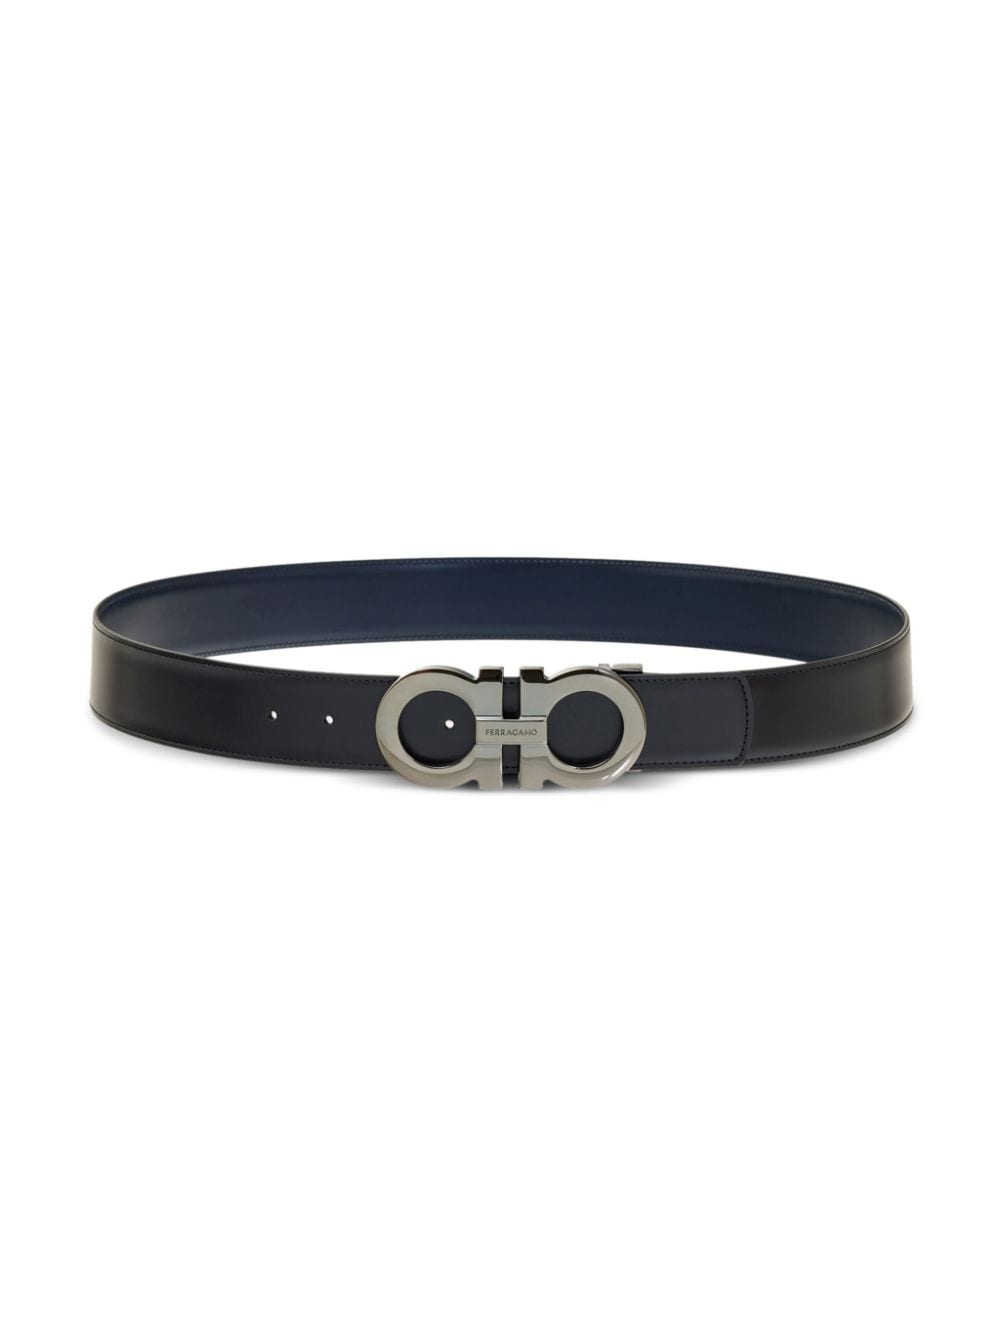 Gancini reversible leather belt<BR/><BR/><BR/>